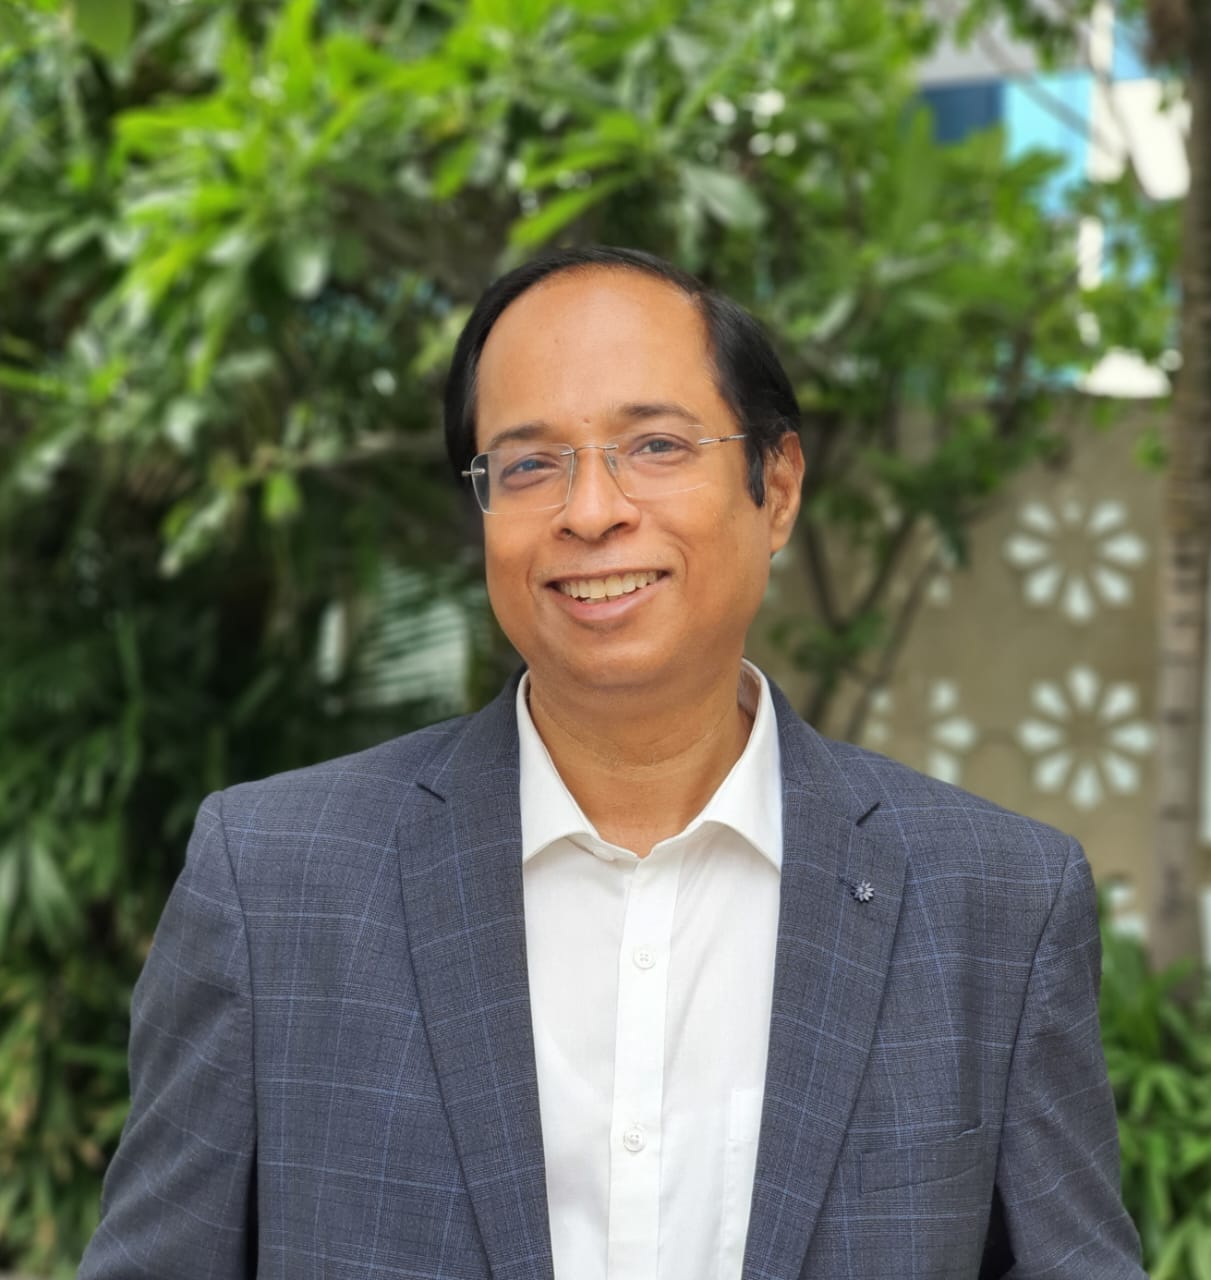 Sanjay Srivastava, <span>Strategic Advisor & Former CEO- Mahindra World City</span>